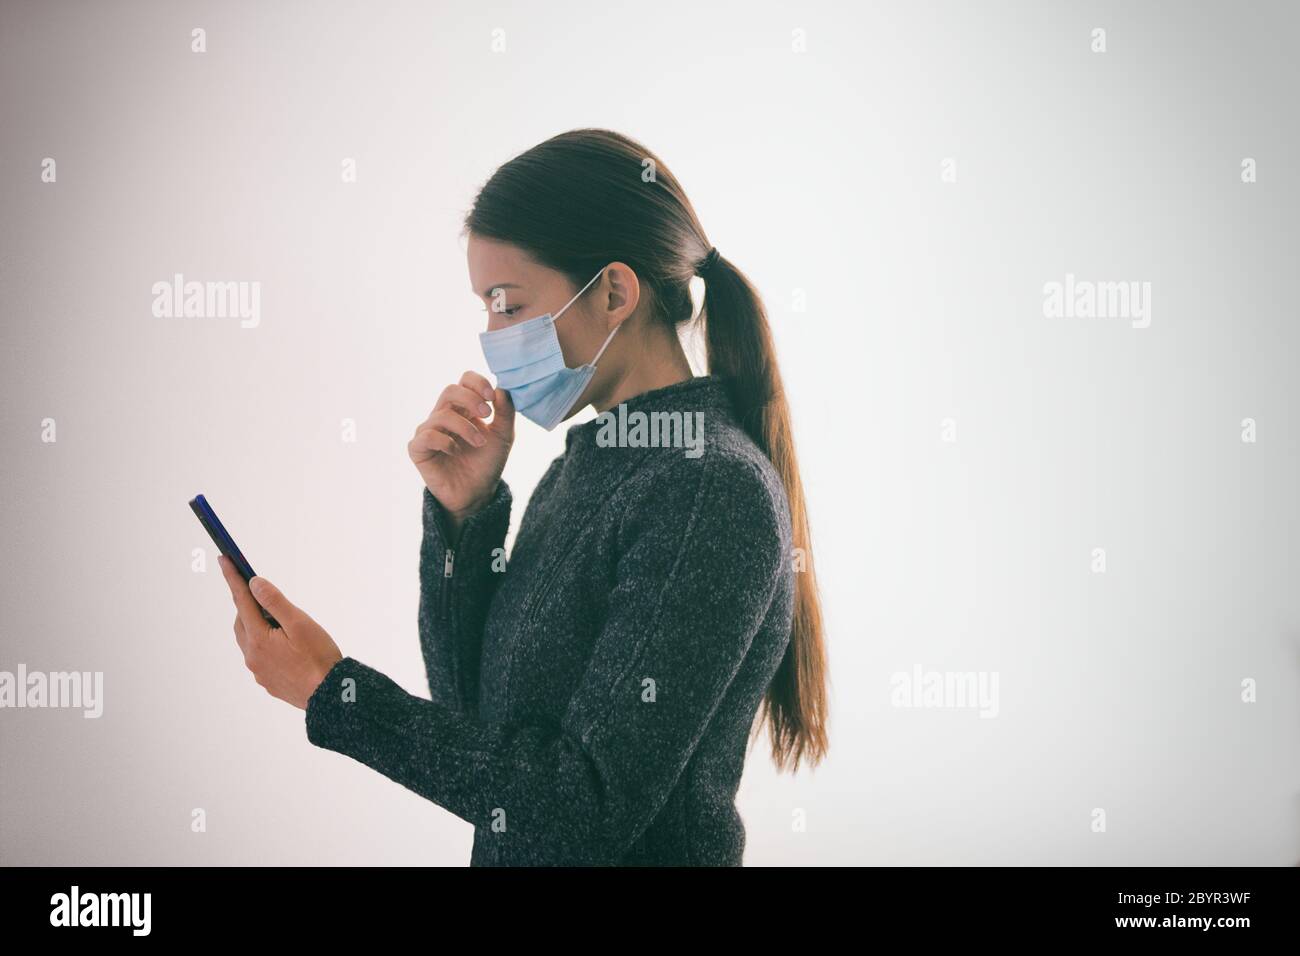 COVID-19 applicazione di tracciamento dei contatti sul telefono cellulare donna che cammina all'esterno mentre si indossa una maschera medica chirurgica a contatto con il viso testando smartphone Foto Stock